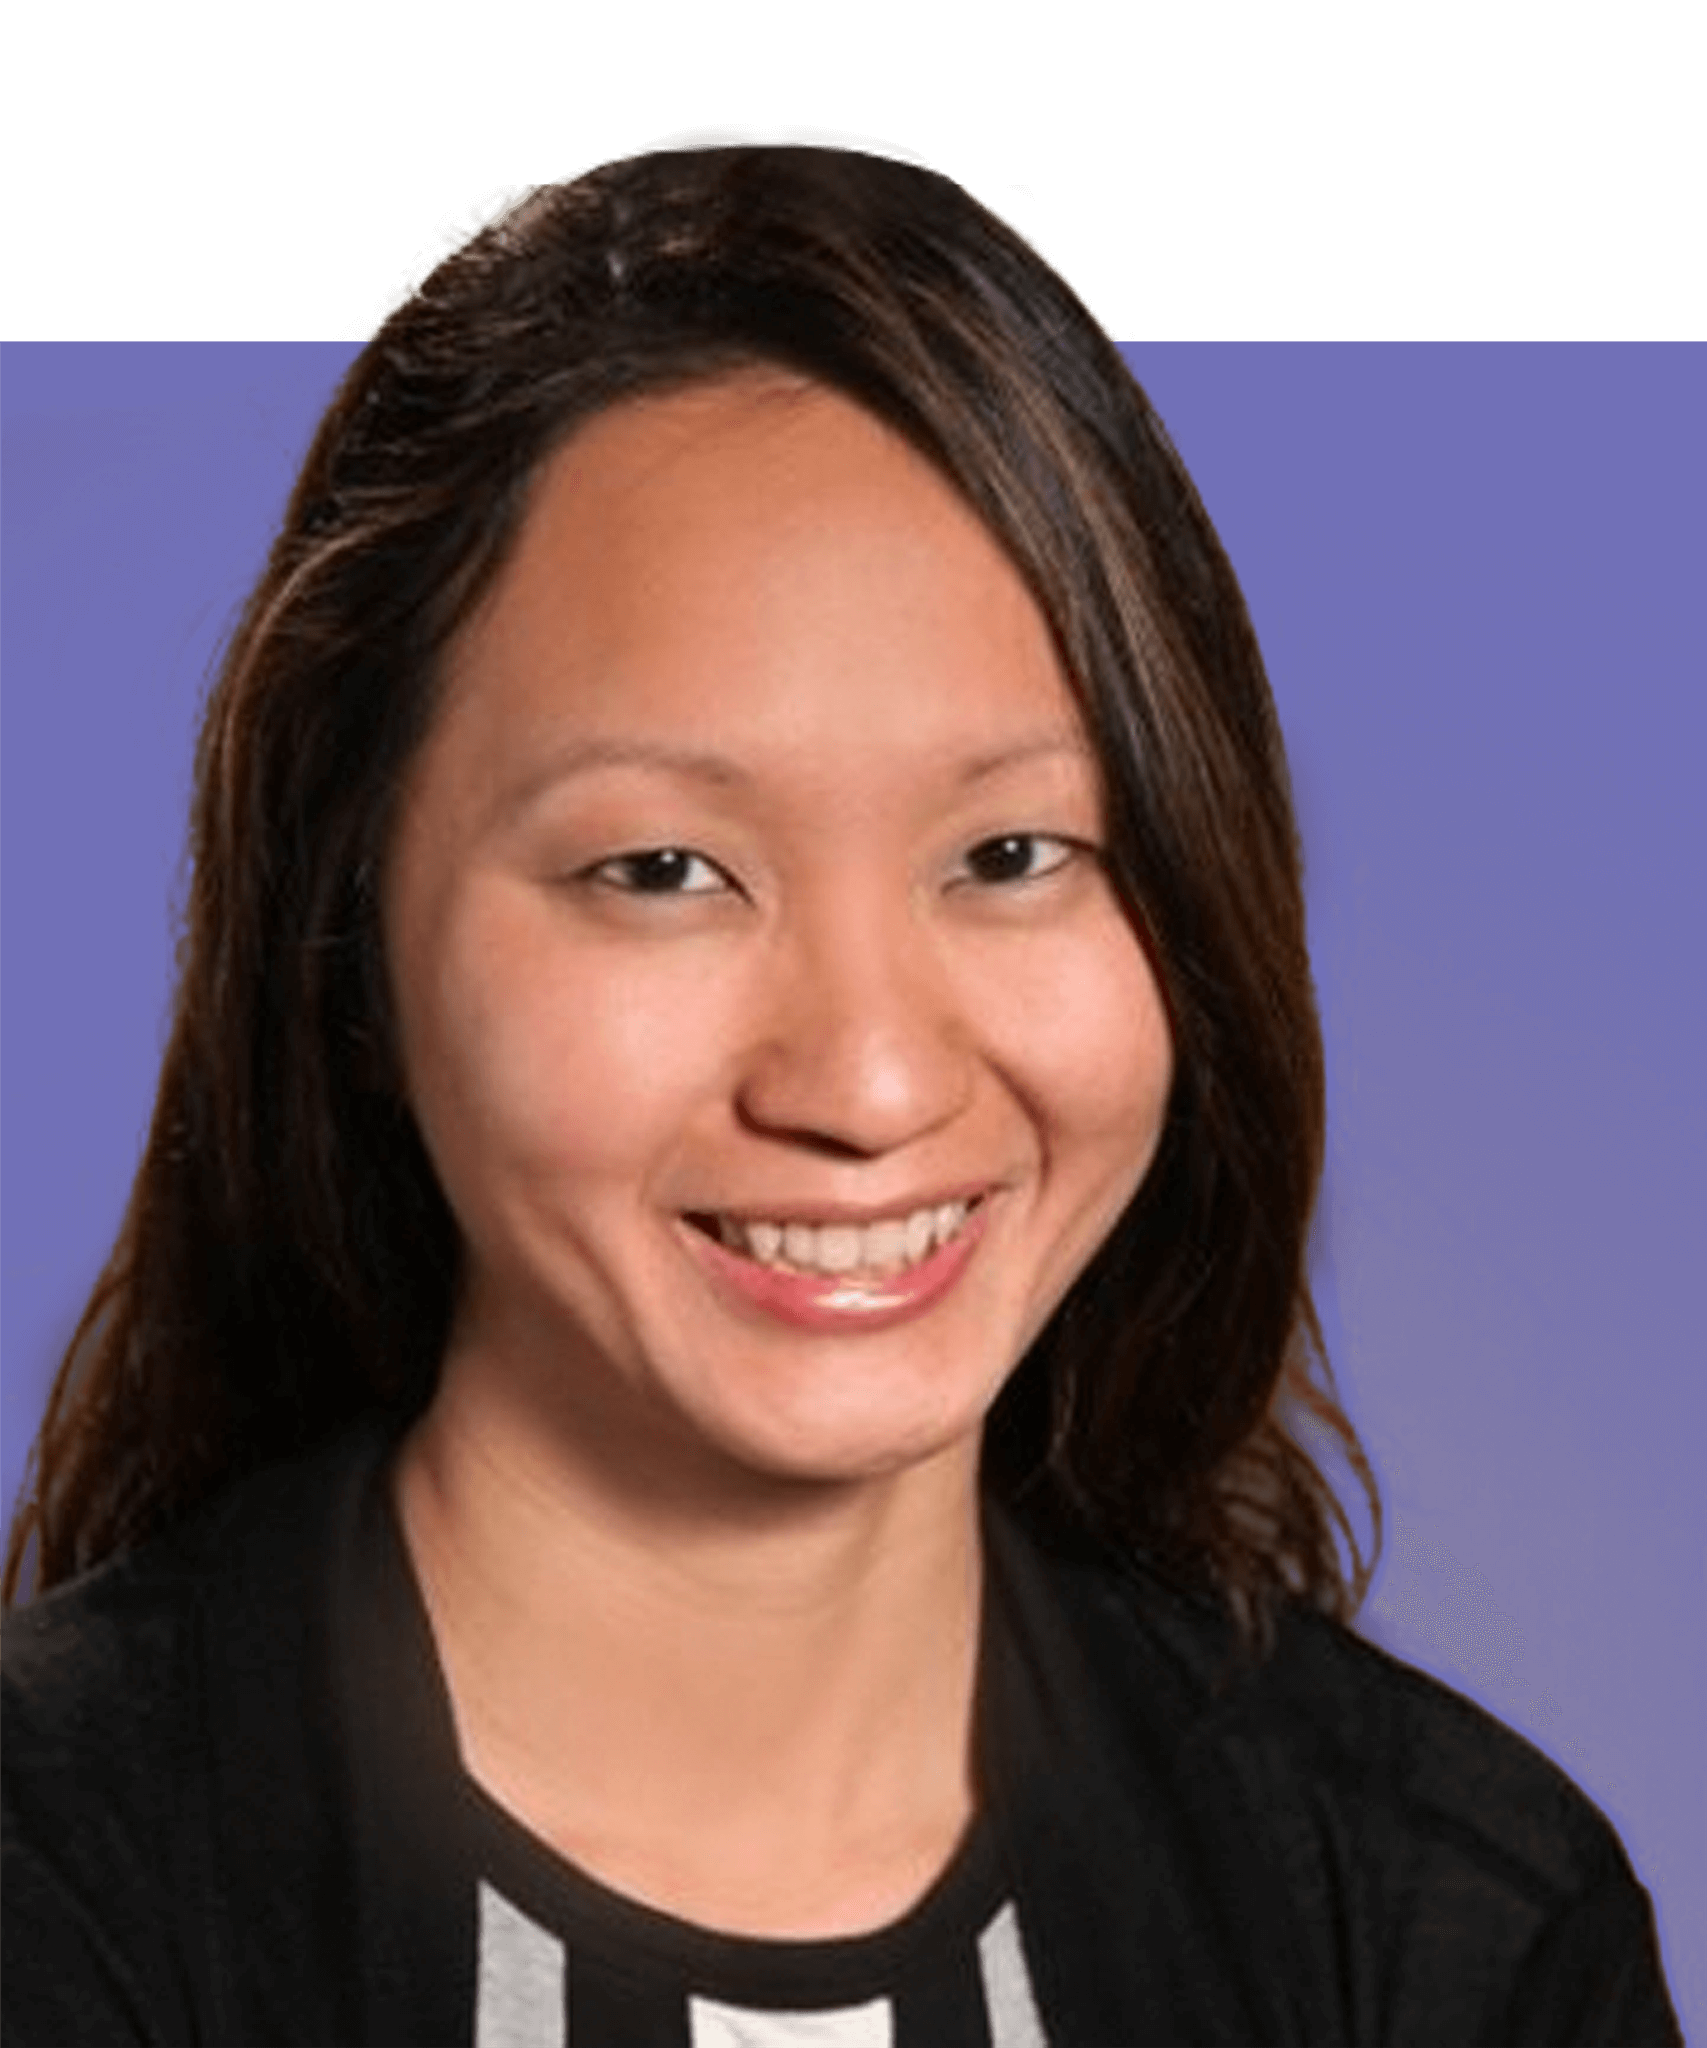 Fotografía de la cabeza de la líder de North America Health, Jacelyn Seng. Es una mujer asiática con pelo largo y oscuro y ojos marrones. Lleva un top negro a rayas y sonríe a la cámara.